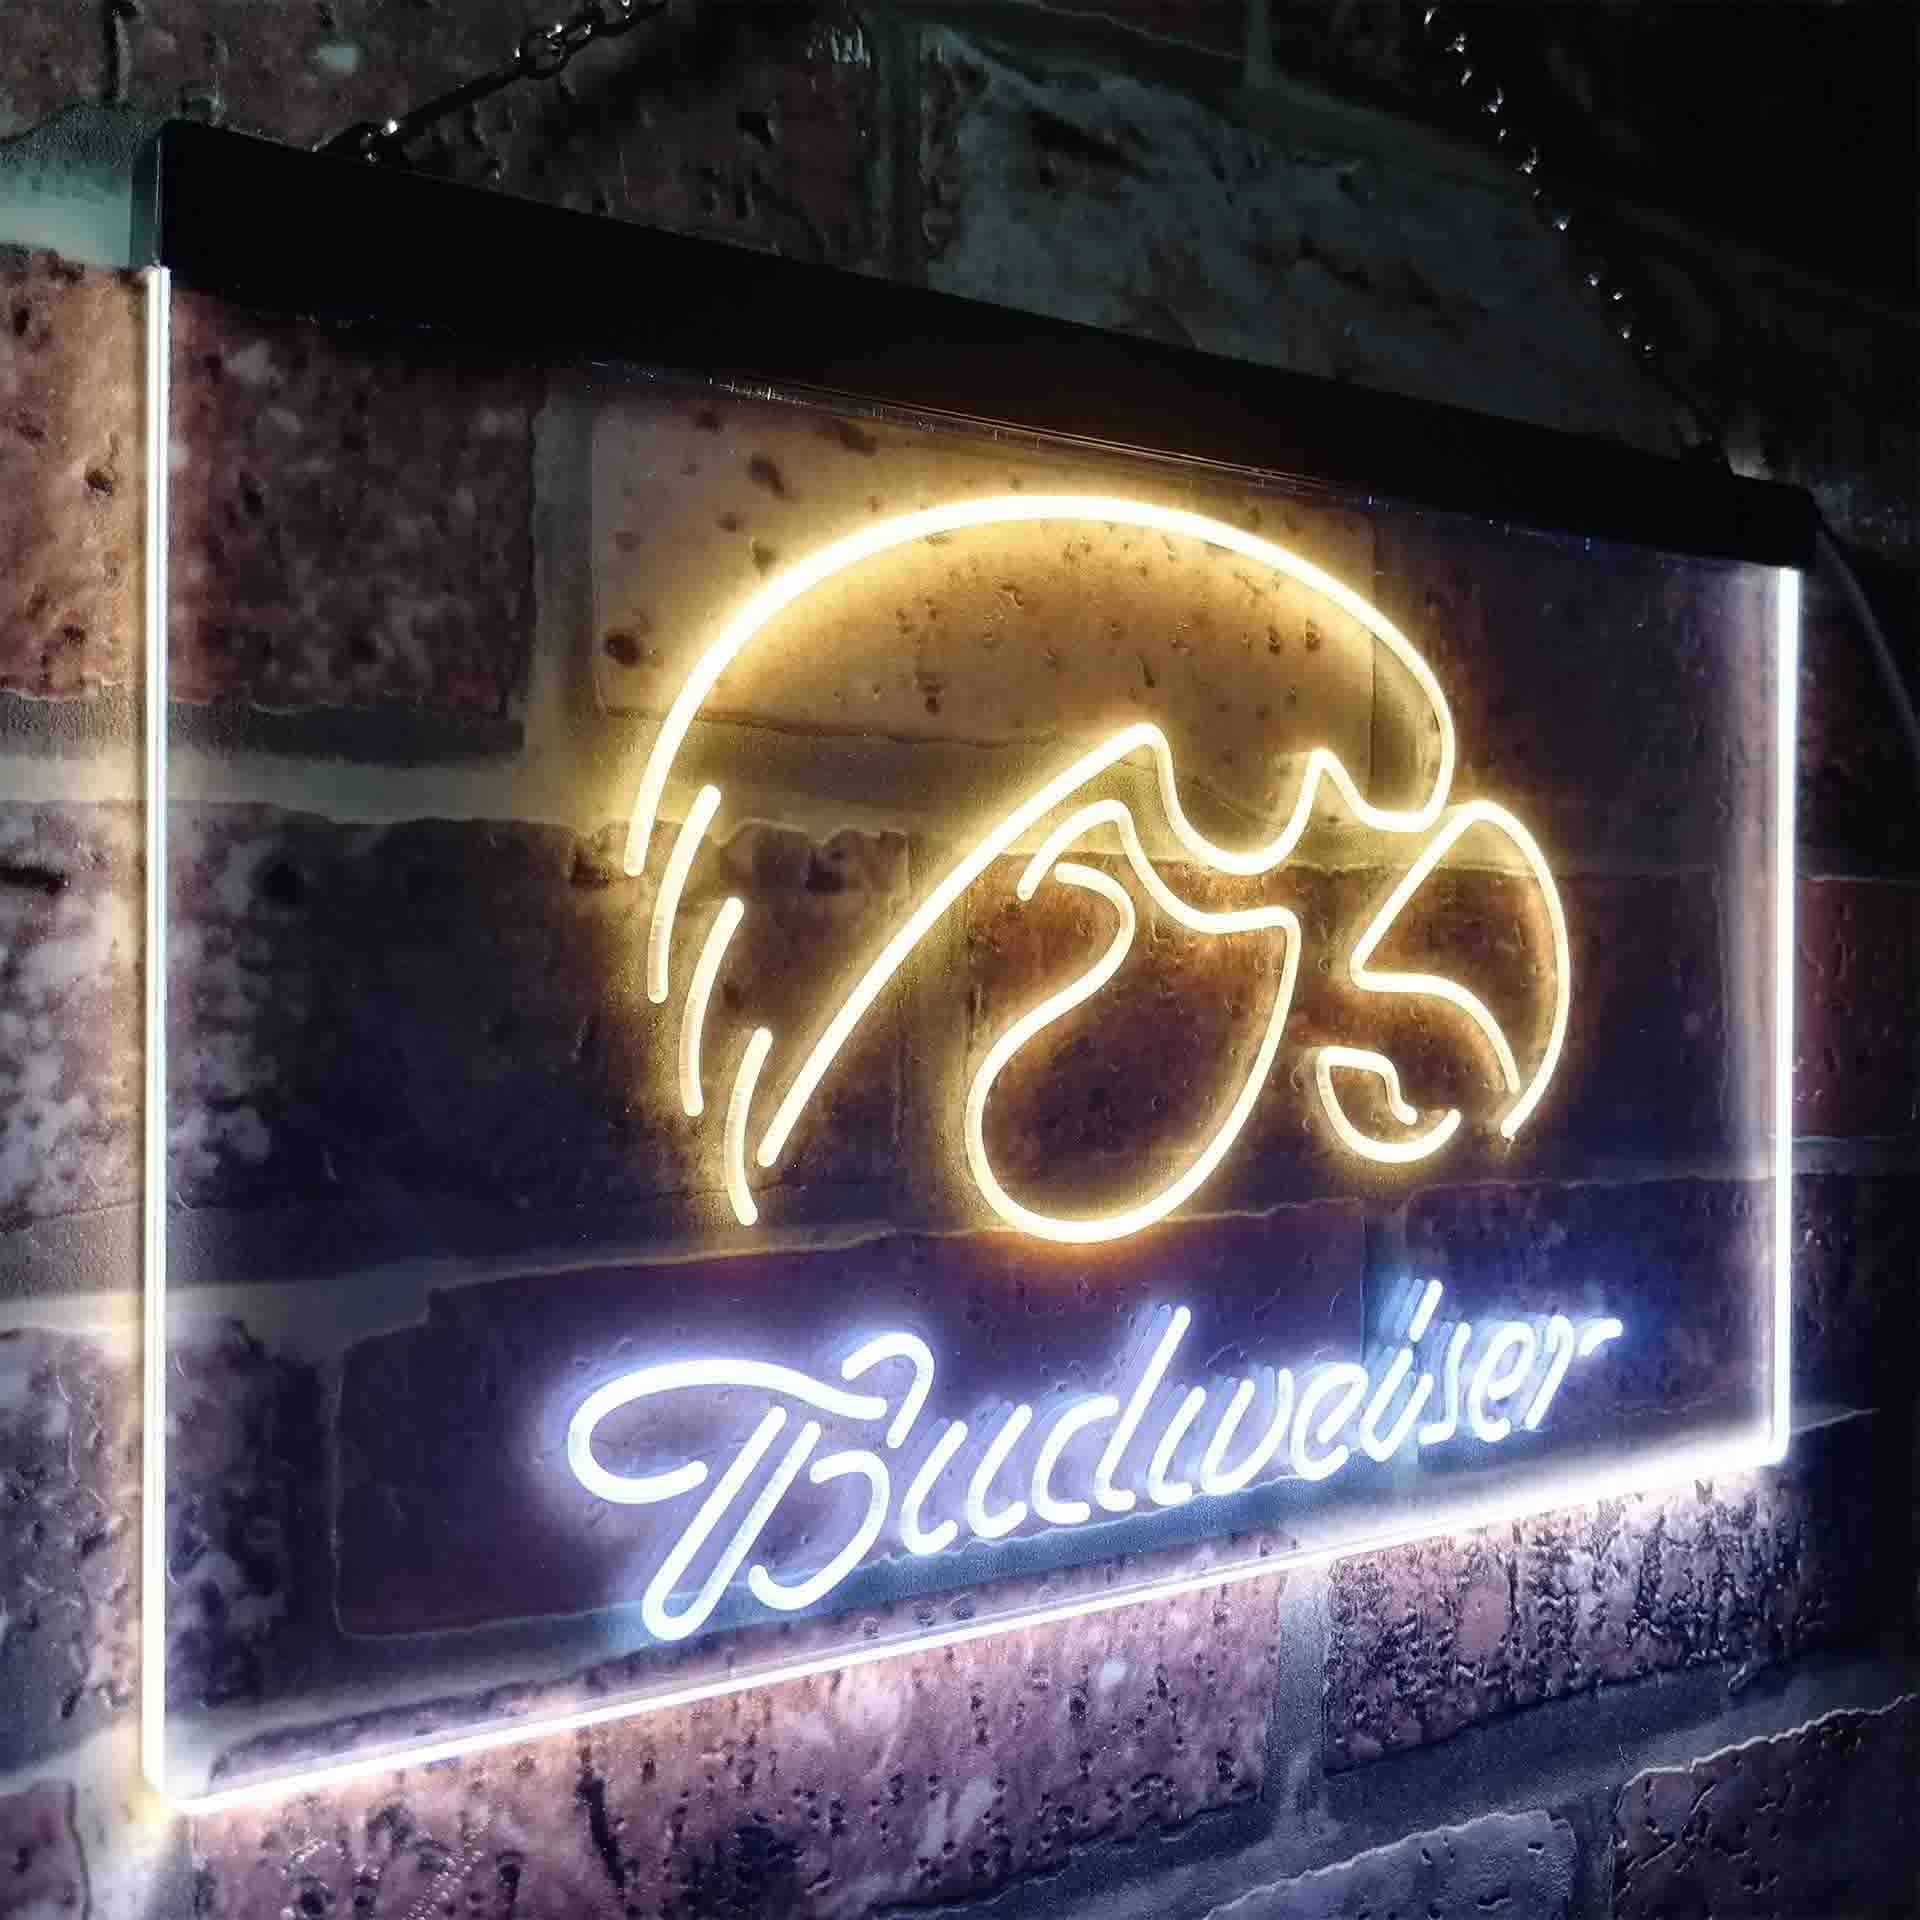 Budweiserss University Of Lowa Club Neon Light Up Sign Wall Decor